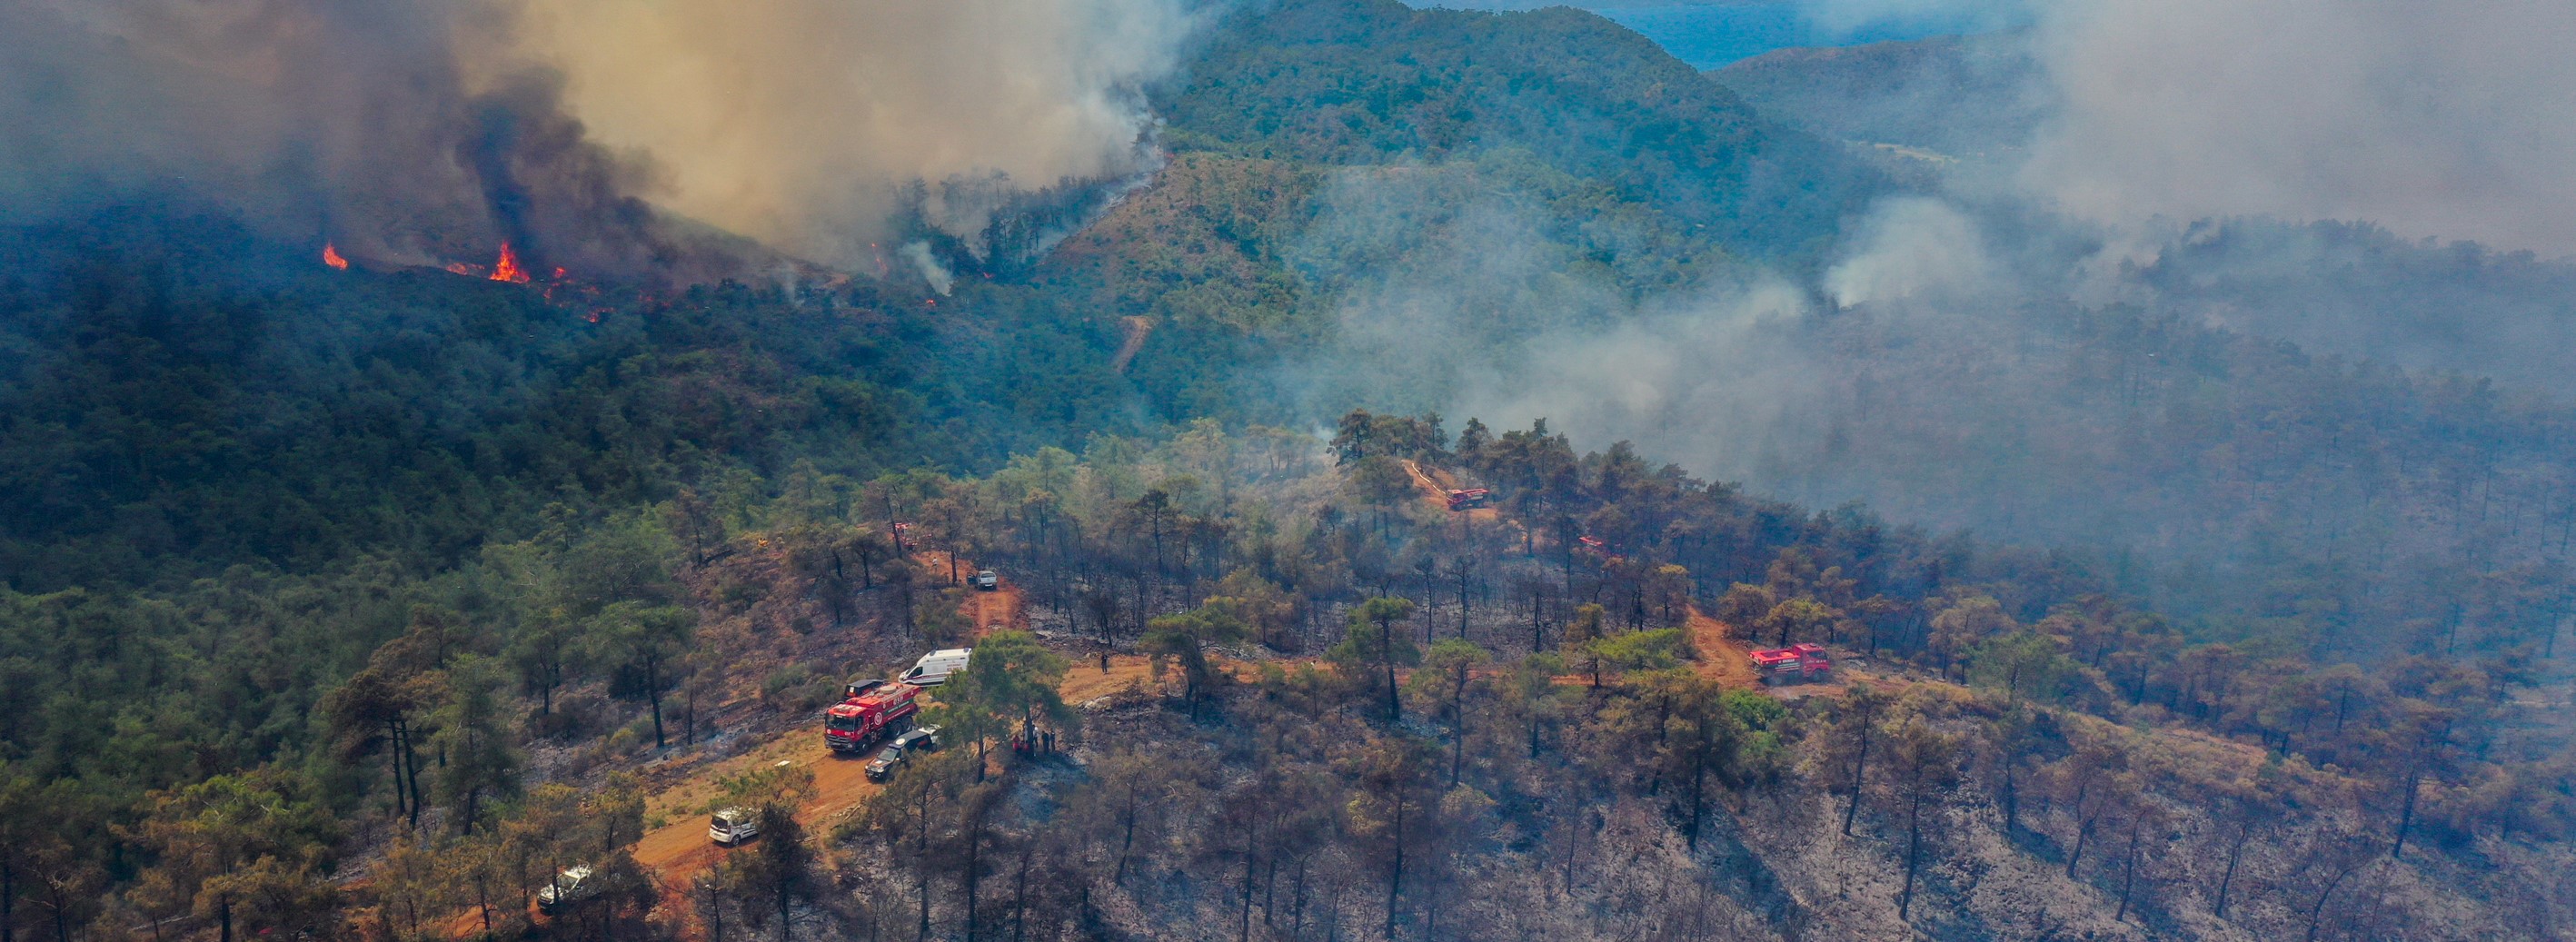 Sağlık Bakanı Koca'dan Marmaris'teki orman yangınına ilişkin açıklama